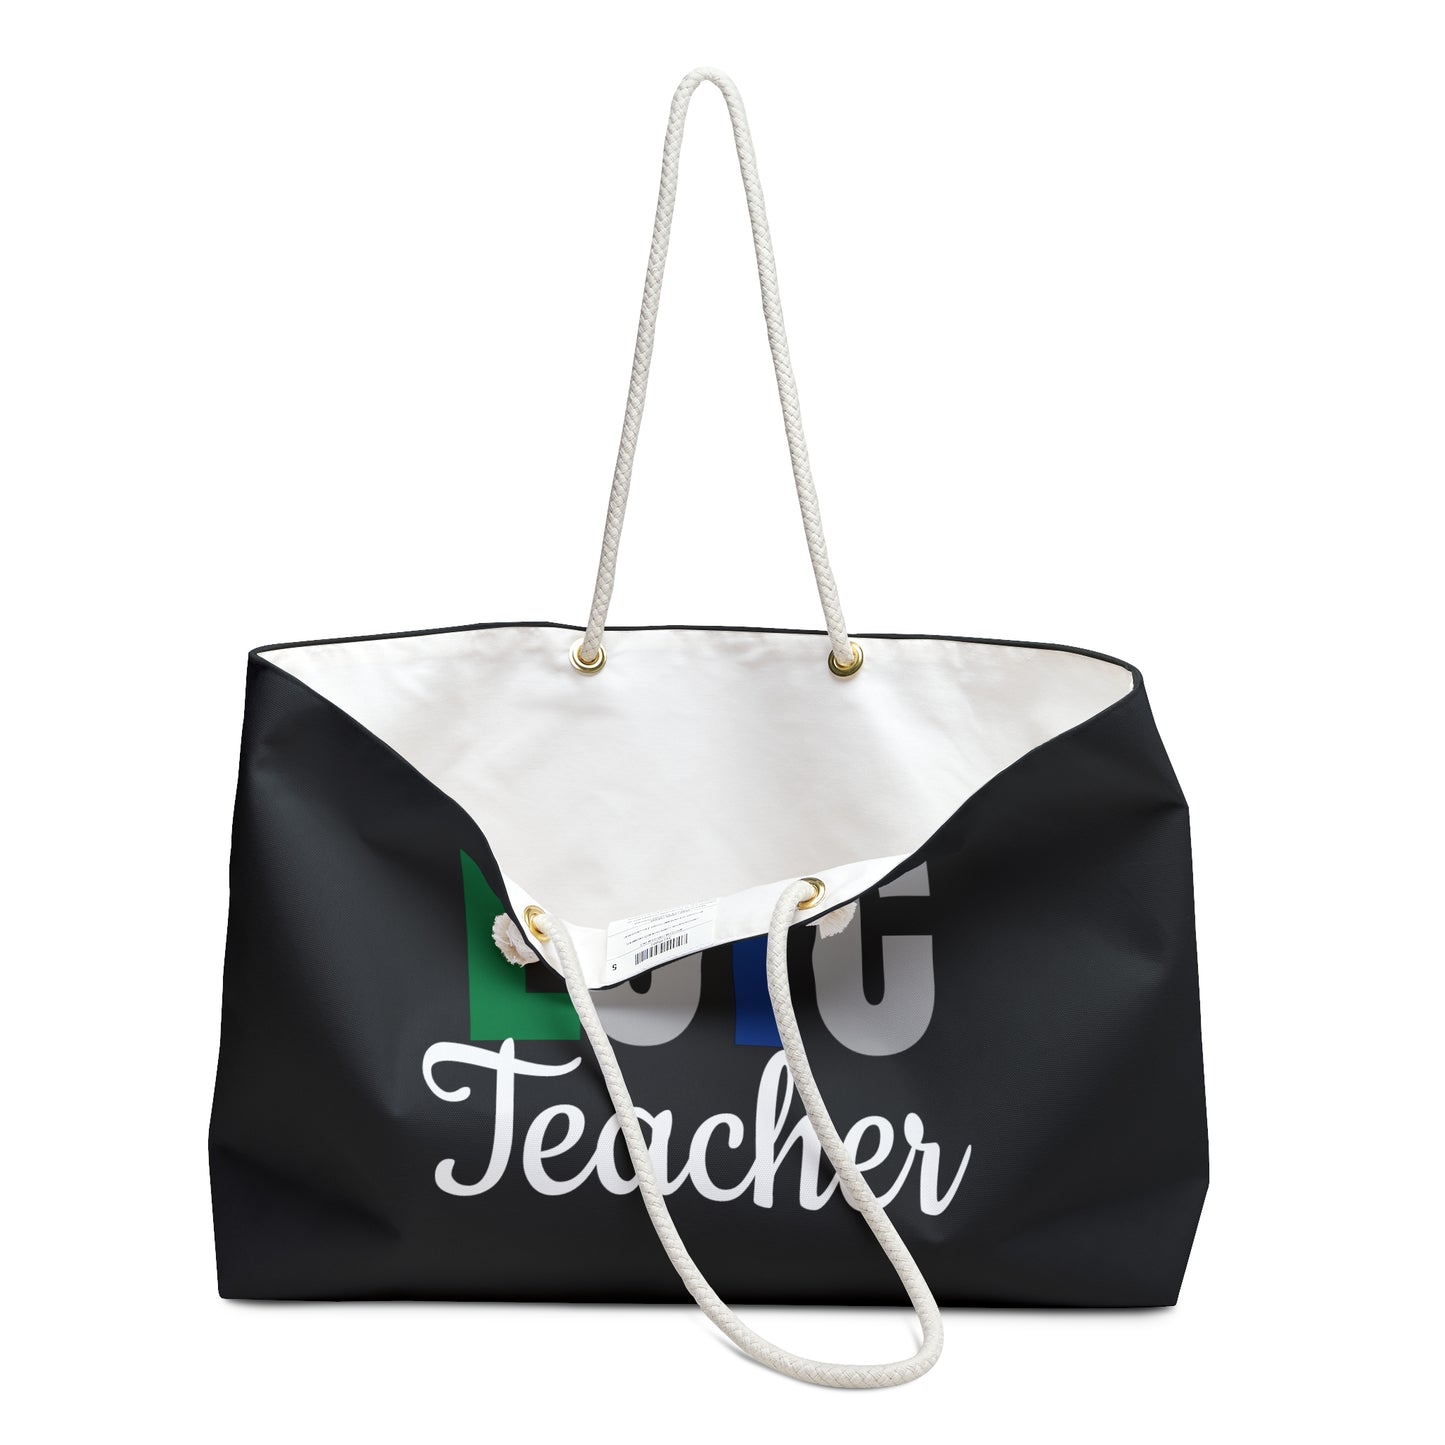 Educator (LOTC/ Weekender Bag)